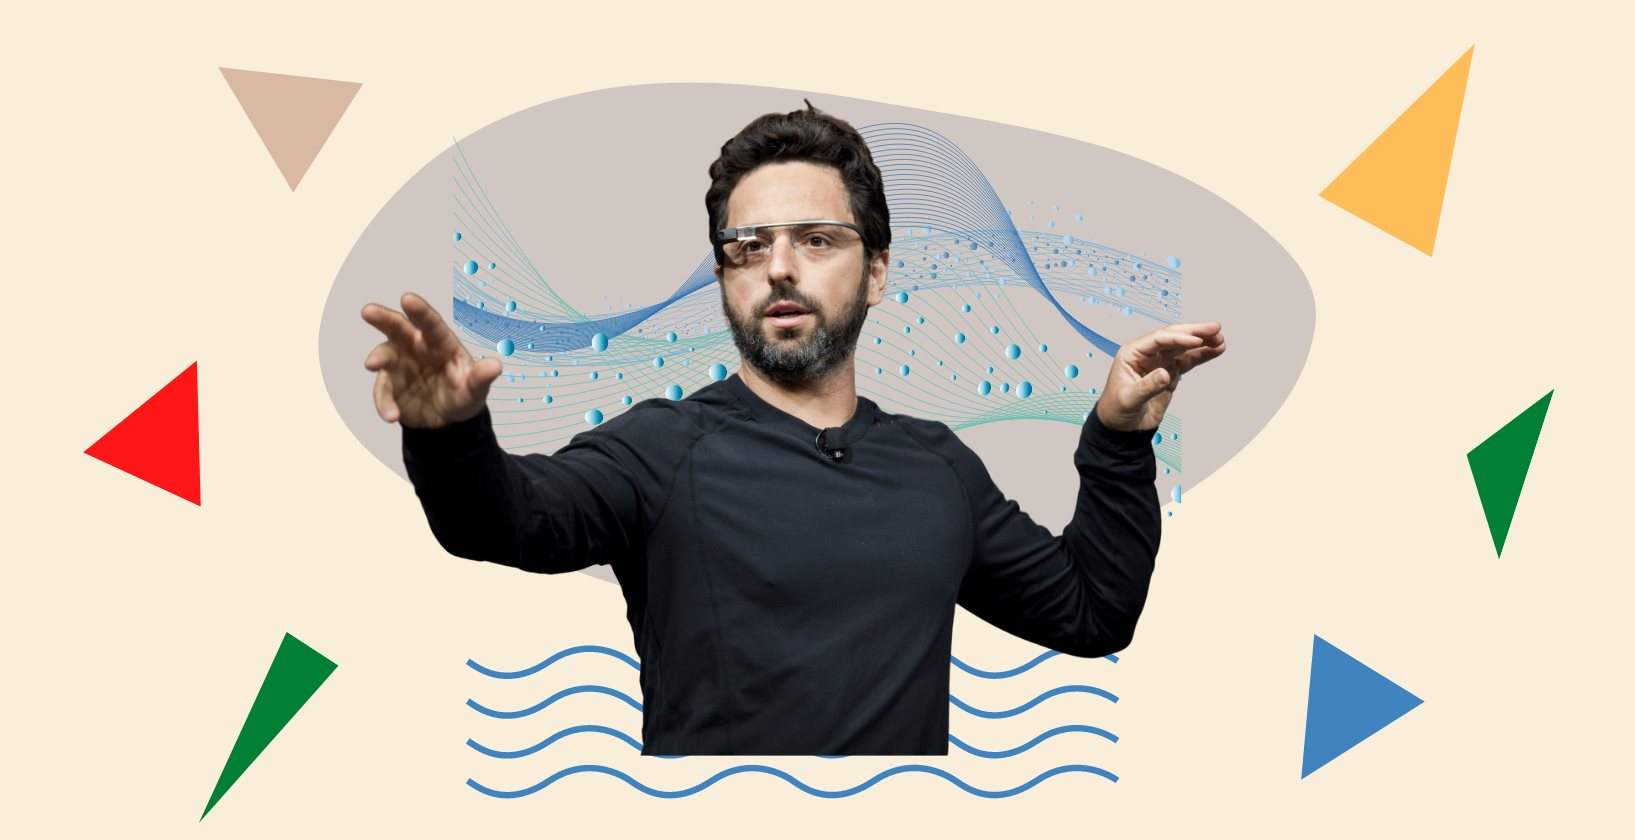 Rời Google, tỷ phú công nghệ Sergey Brin say sưa với một thú vui xa hoa, thuê 50 người chỉ để làm một việc ít ai ngờ 